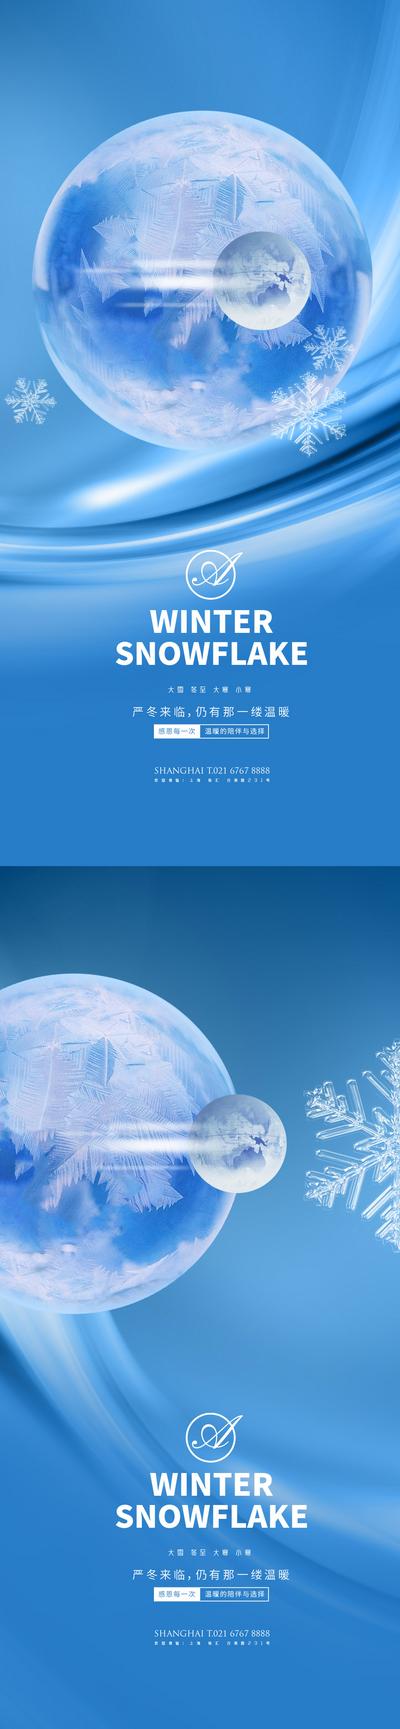 南门网 海报 二十四节气 系列 大雪 冬至 大寒 小寒 雪花